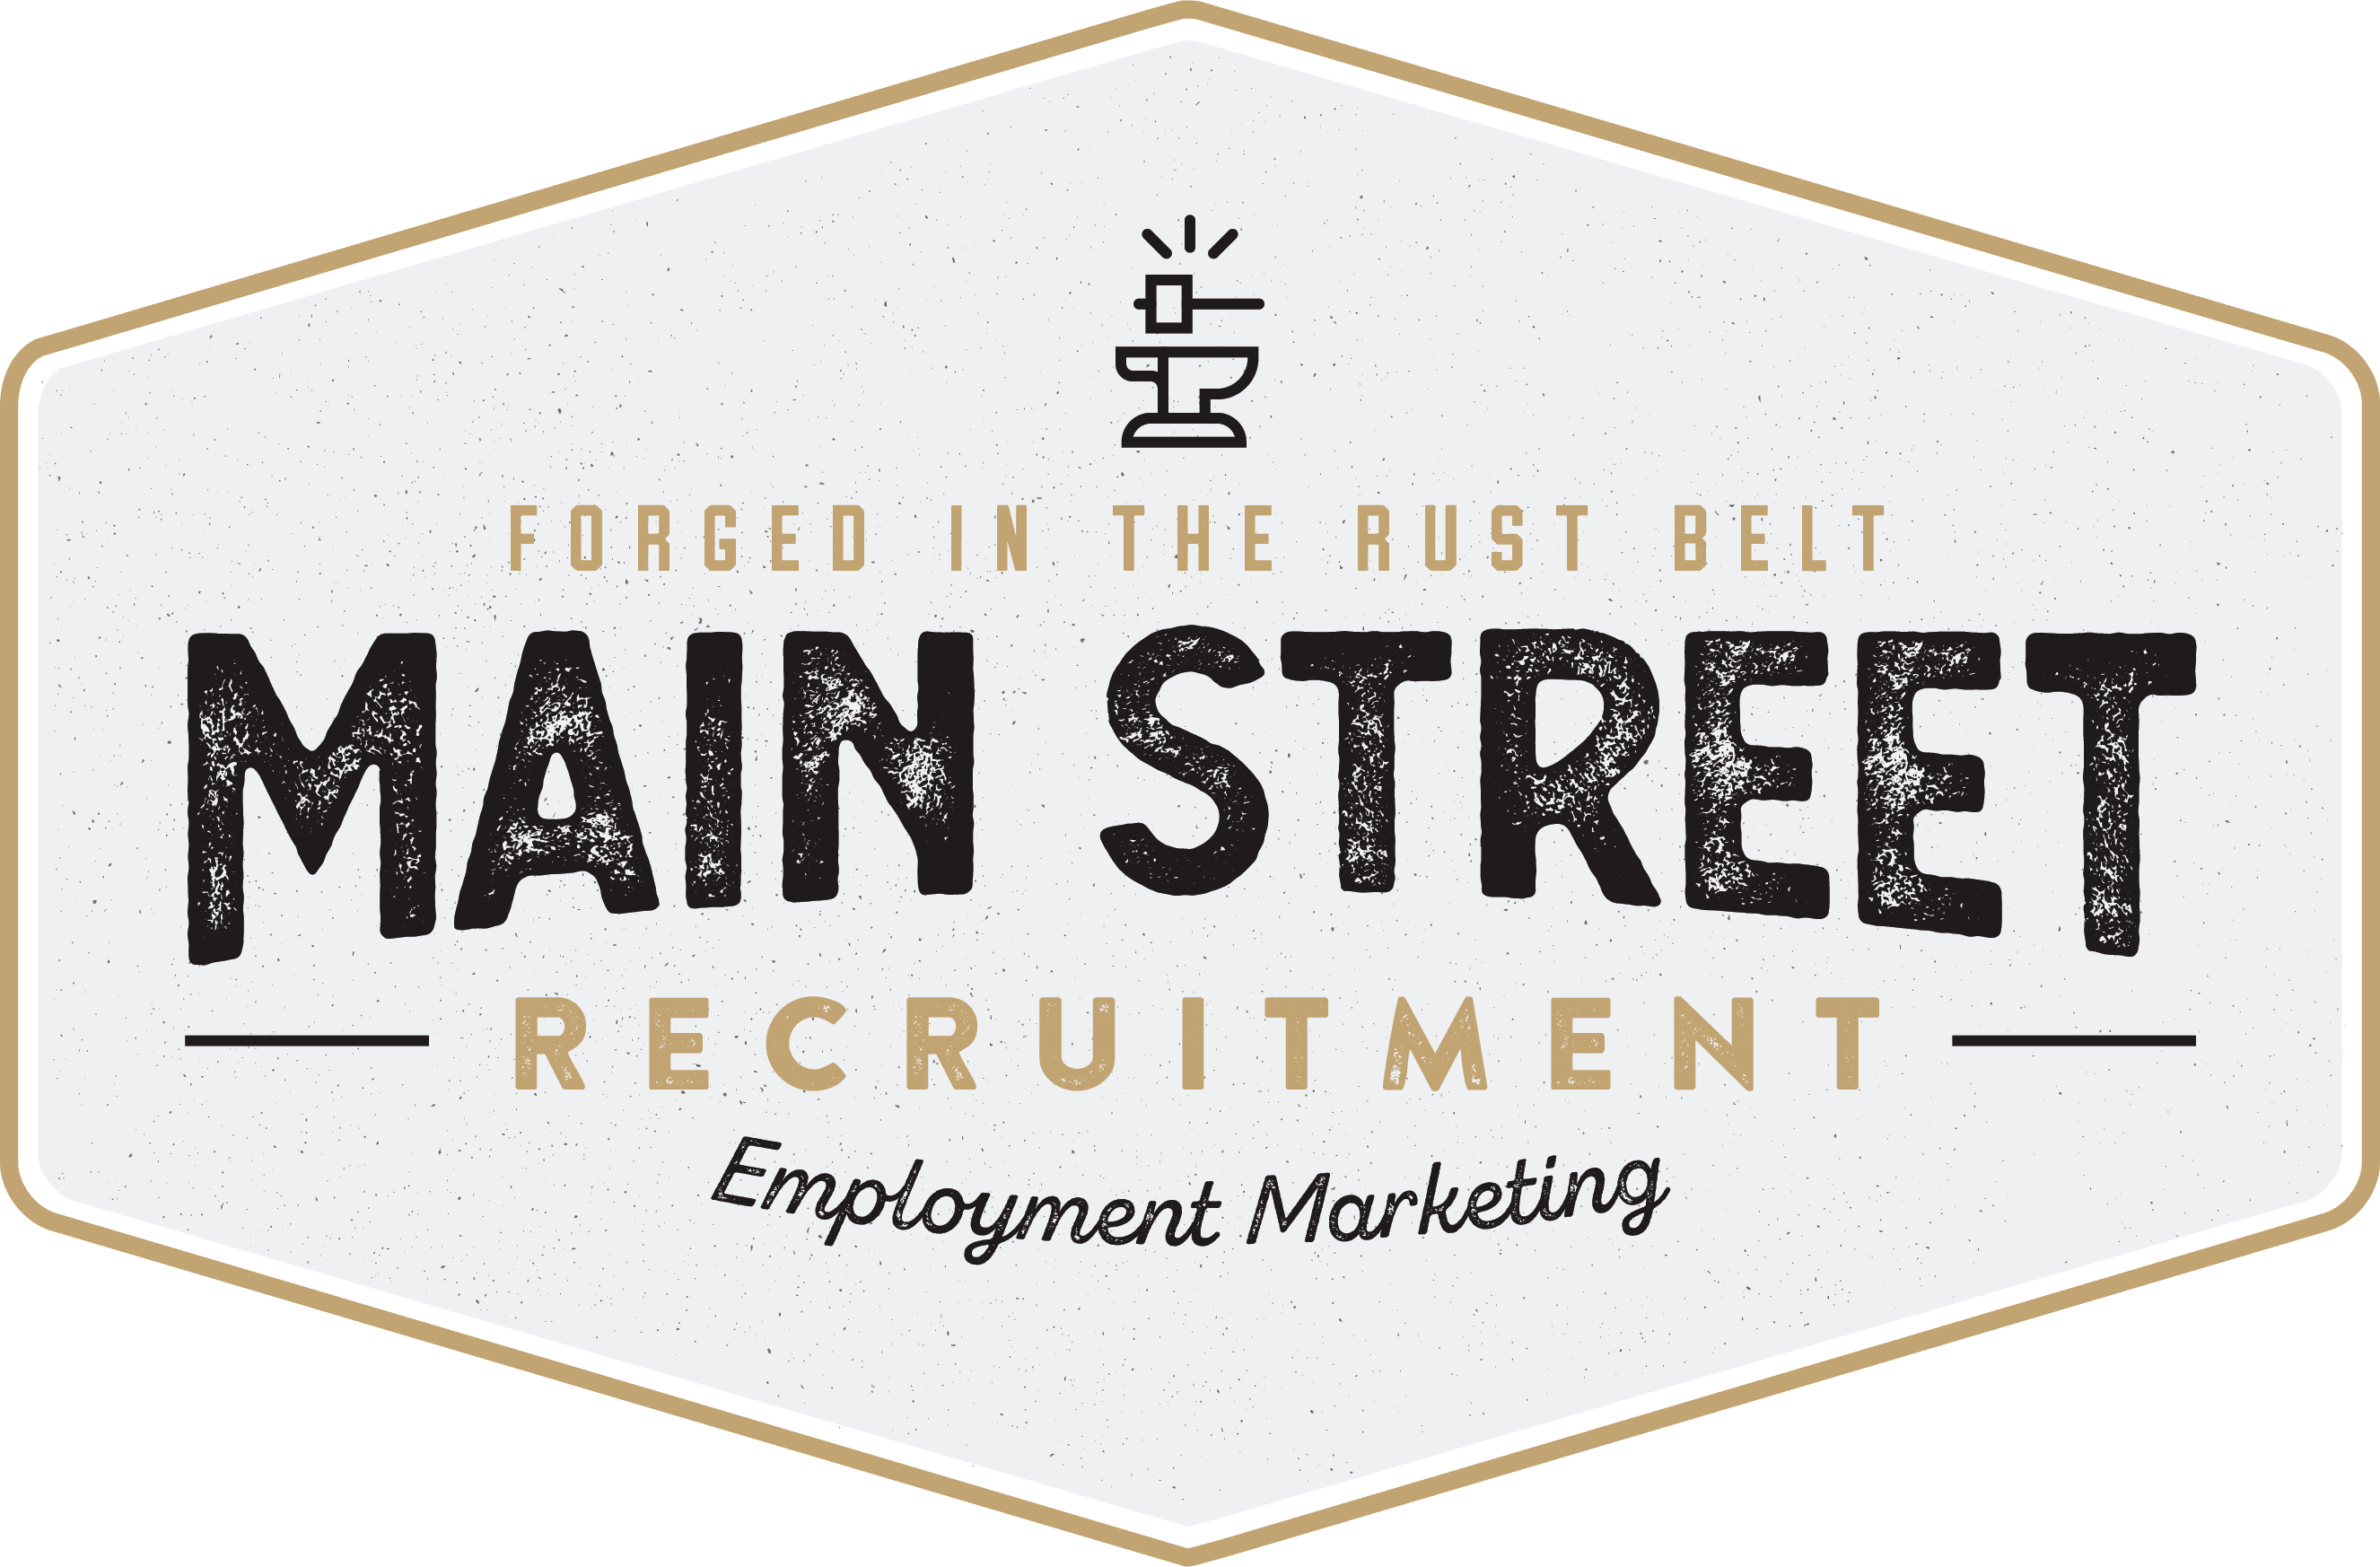 Main Street Recruitment Logo Brandmark White Solid